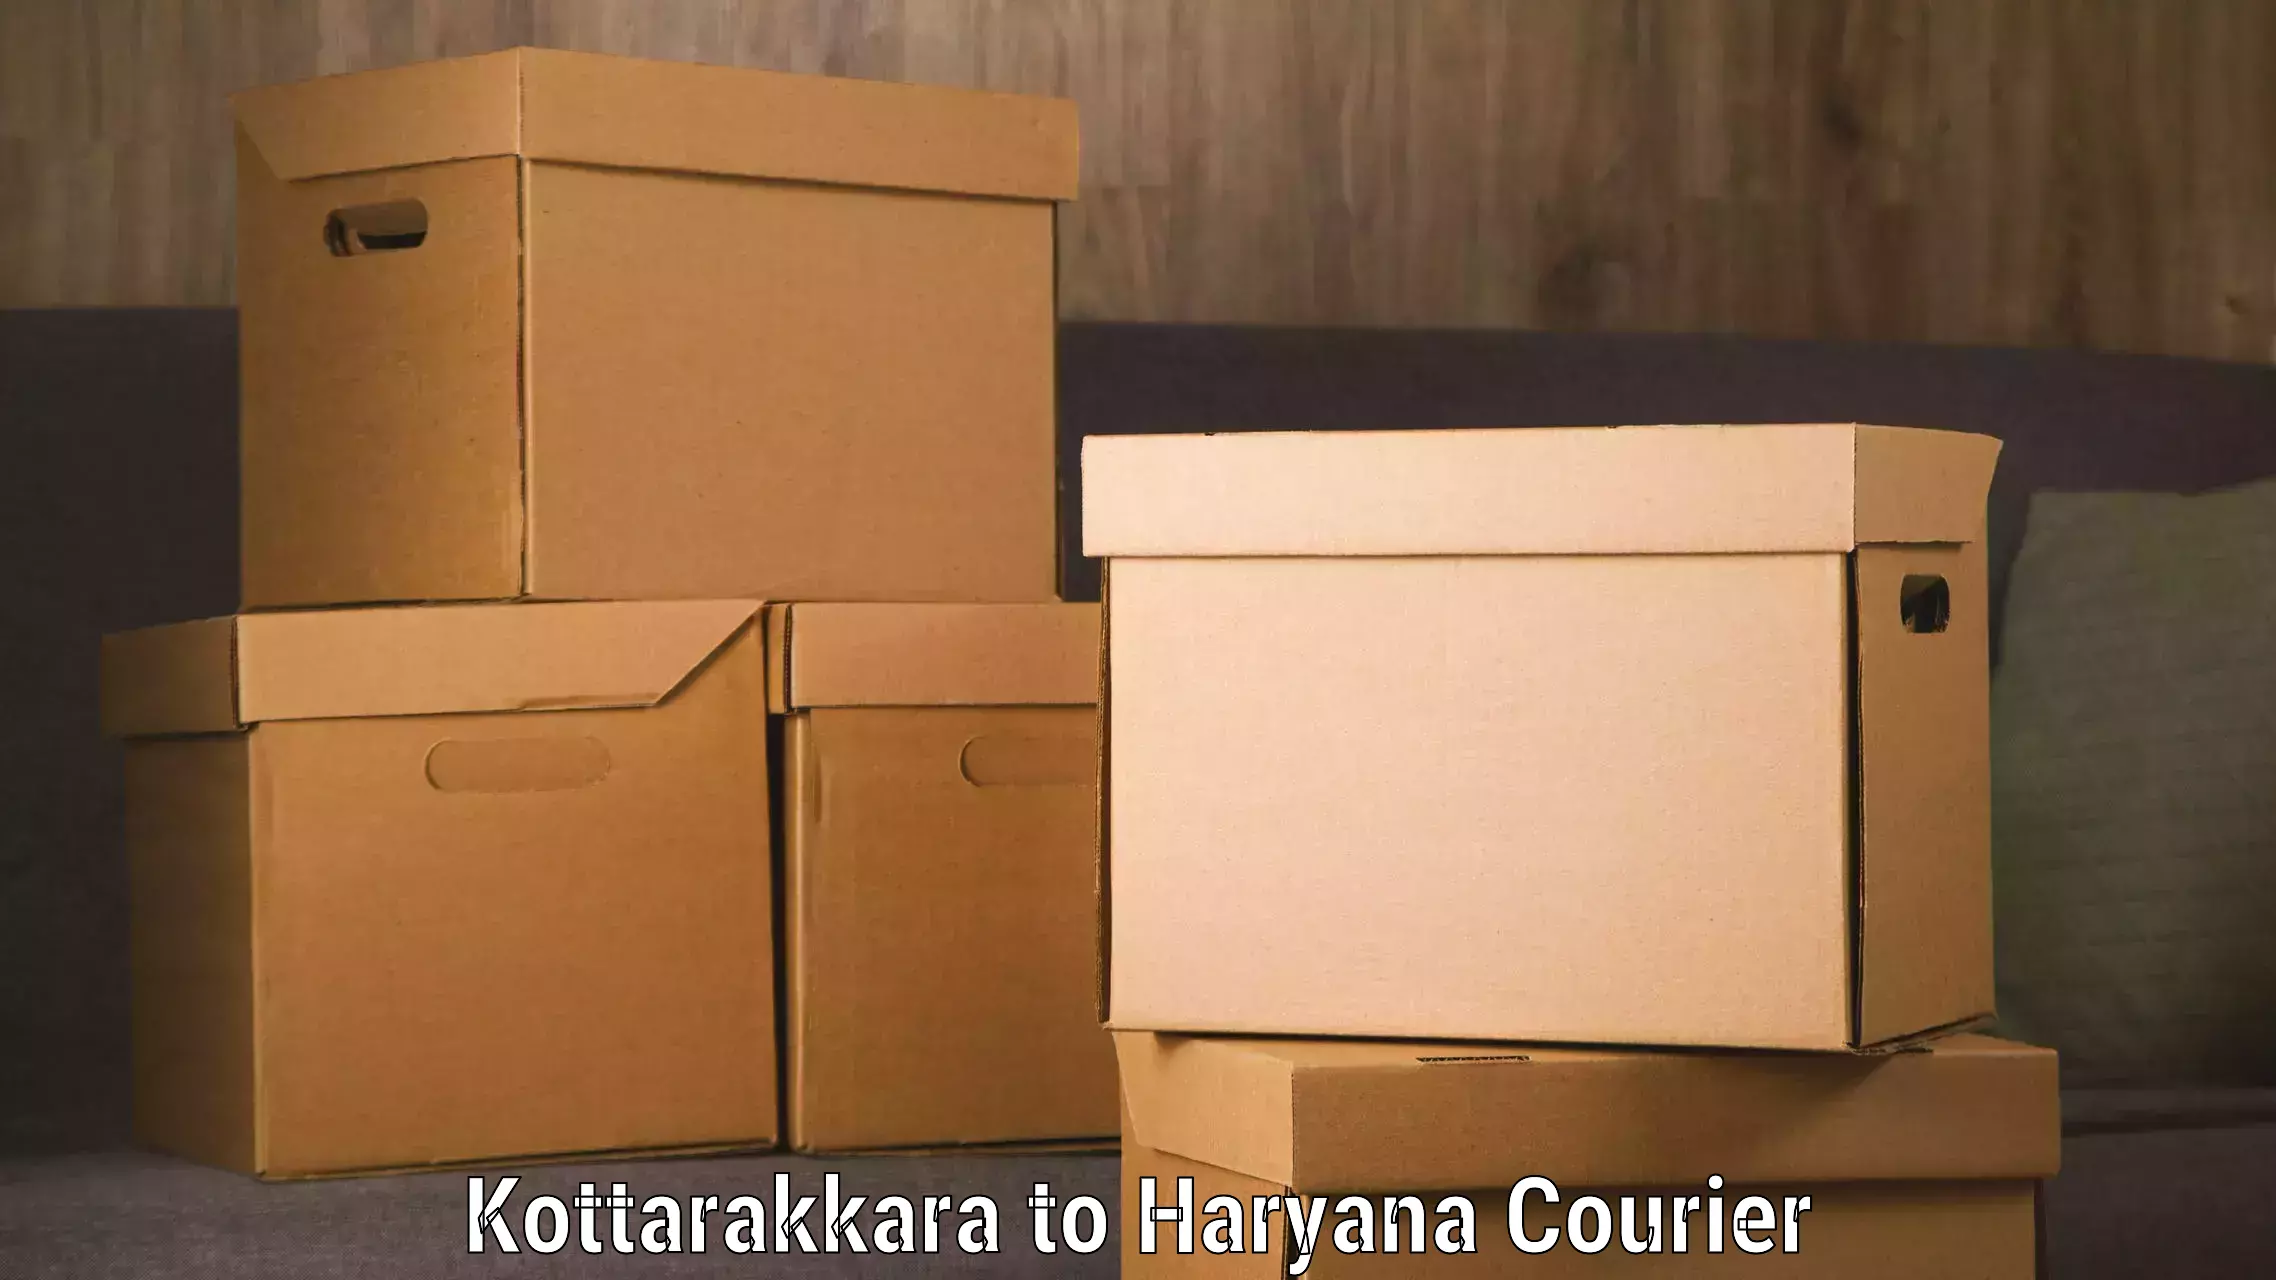 Global courier networks Kottarakkara to Yamuna Nagar